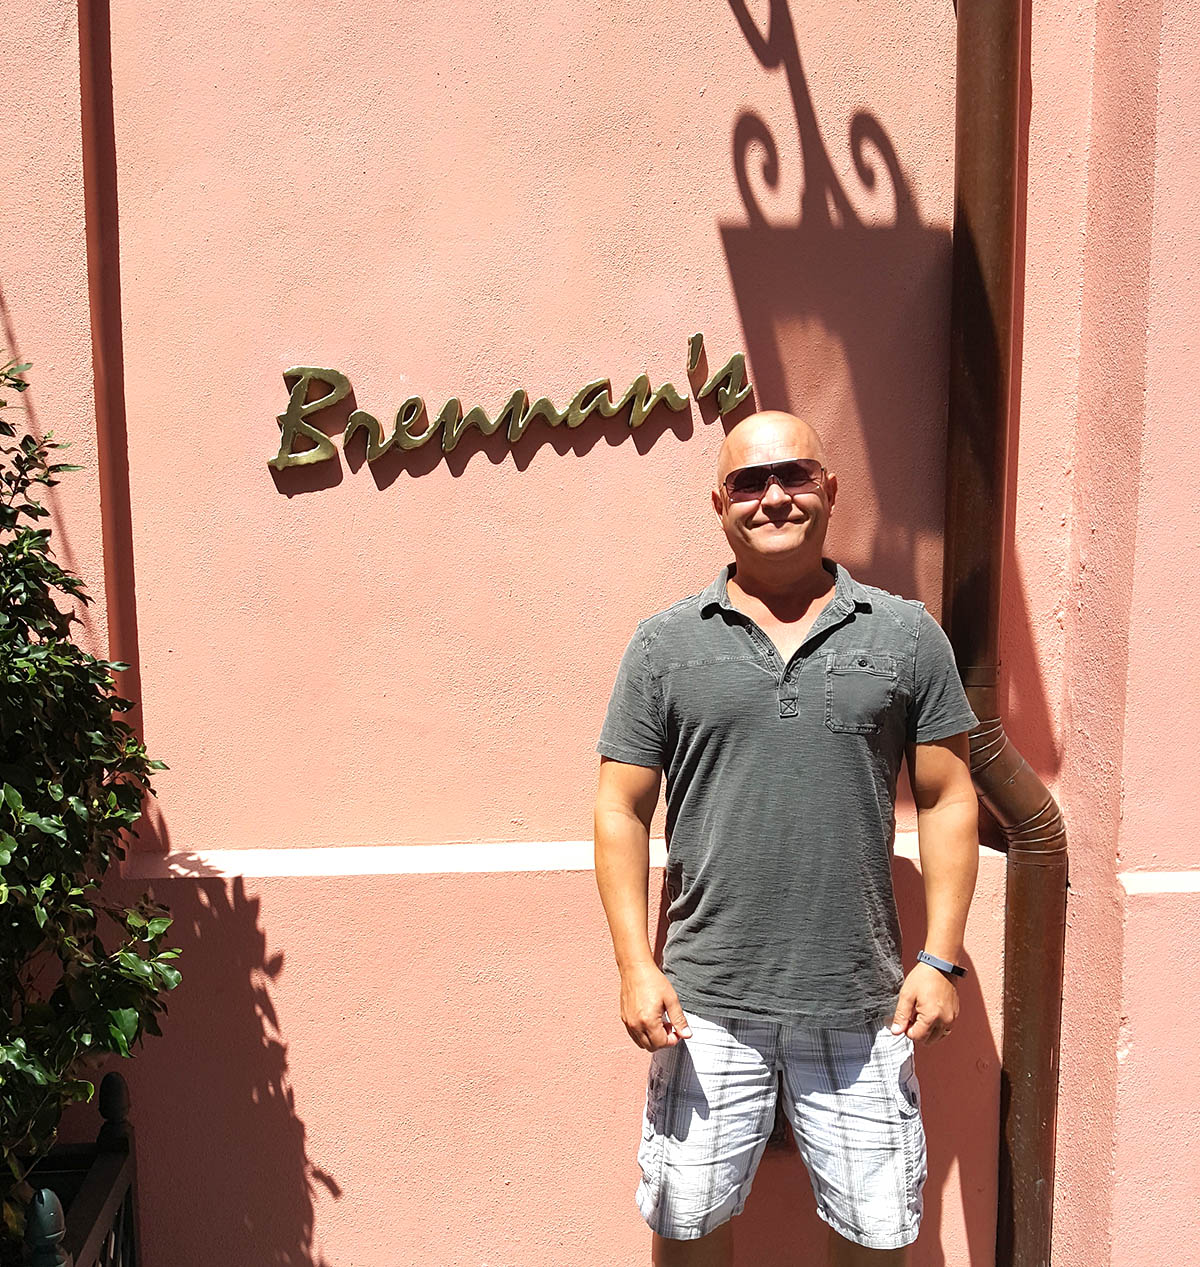 Brennan’s in New Orleans, LA